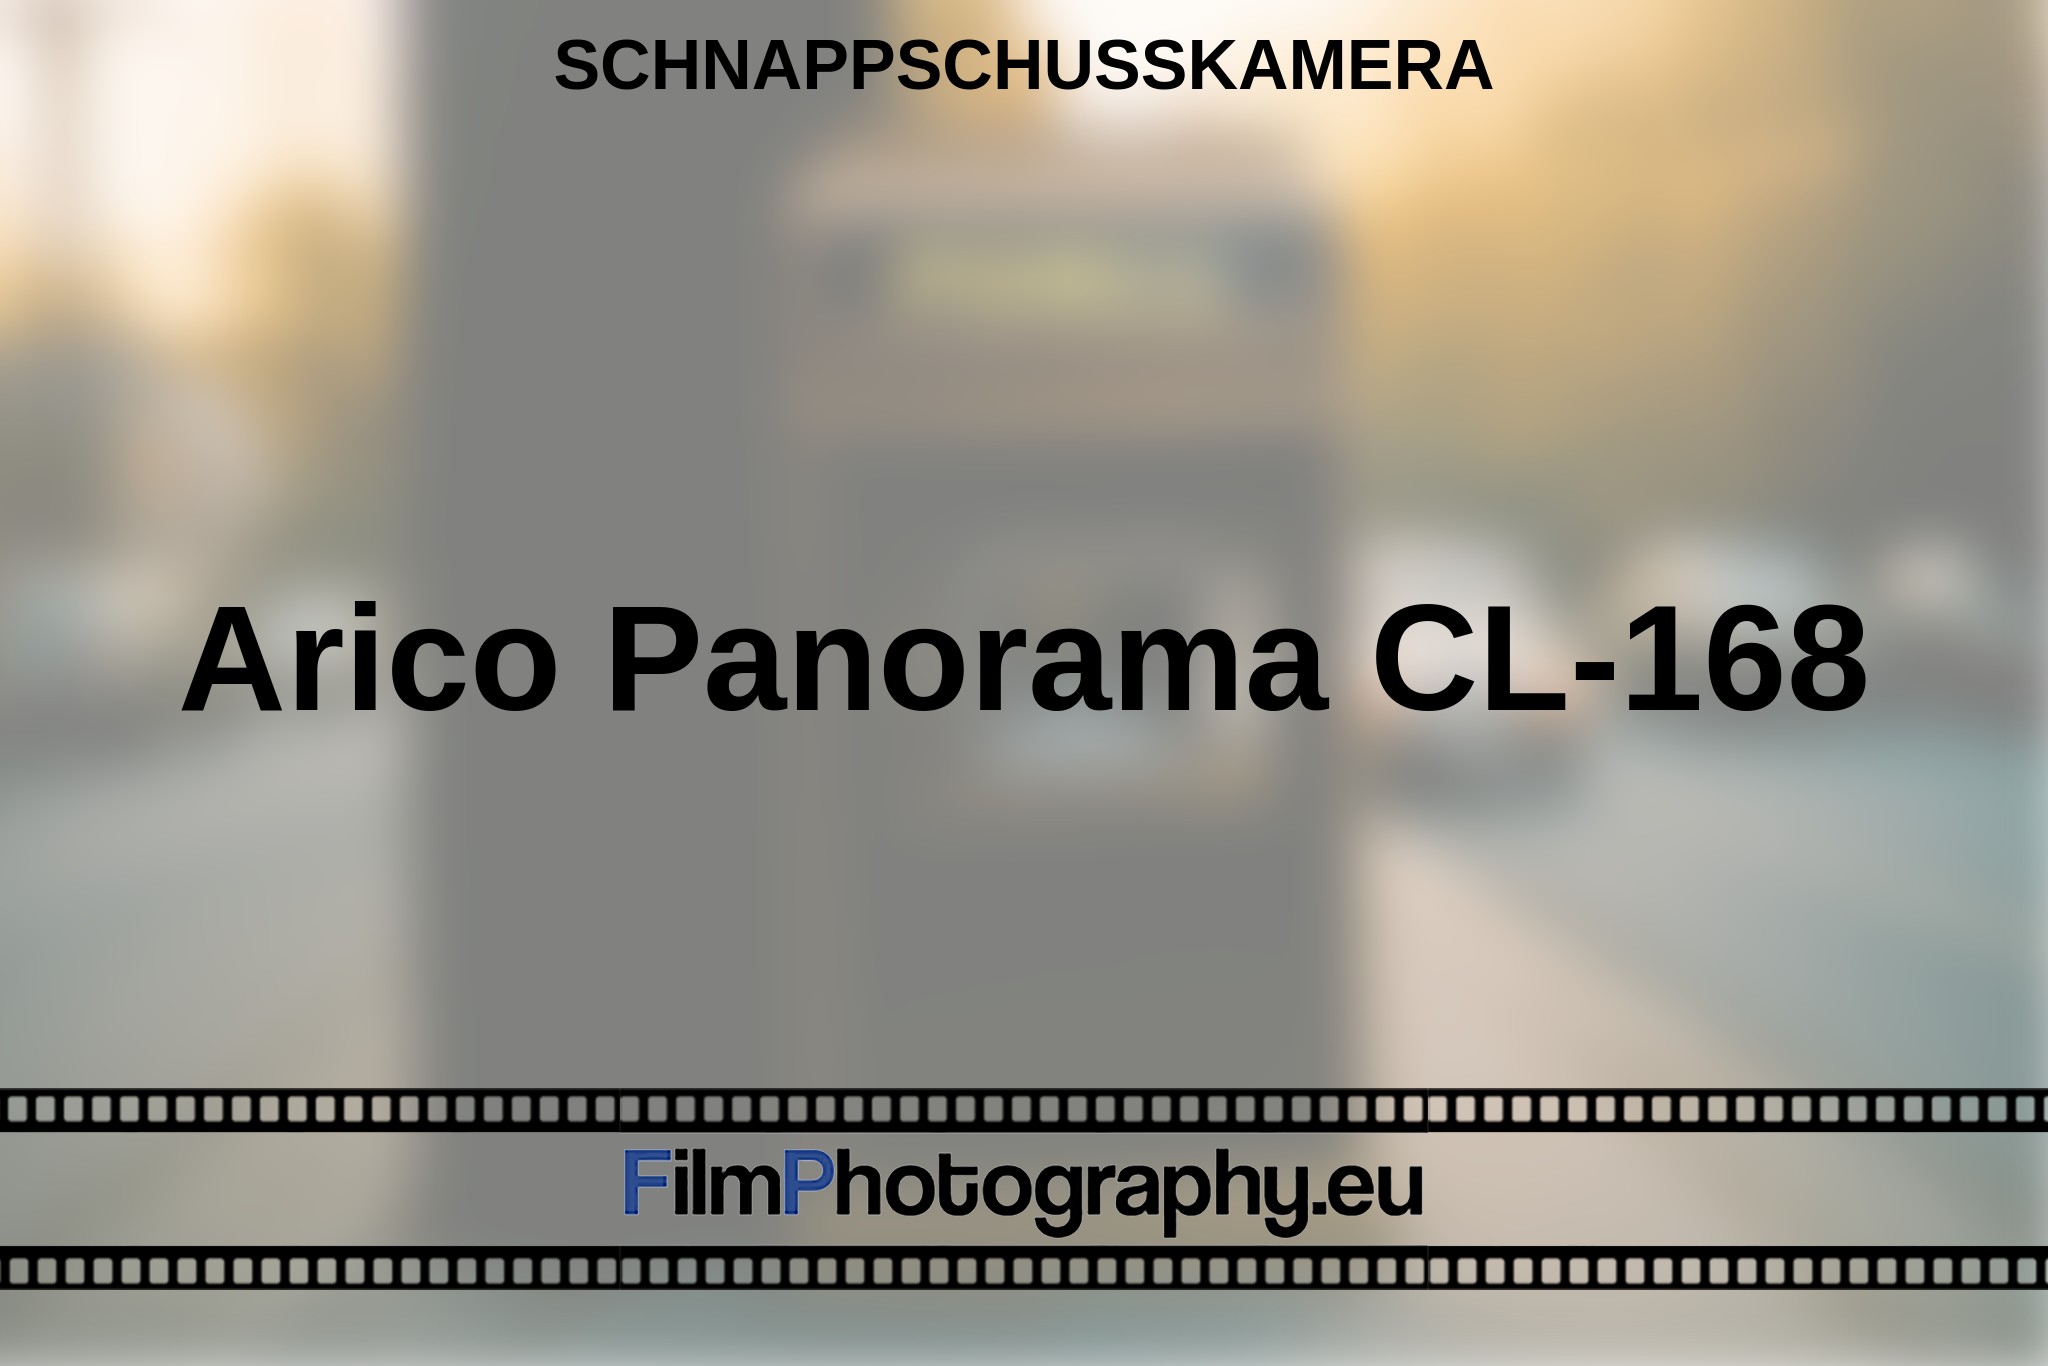 arico-panorama-cl-168-schnappschusskamera-bnv.jpg